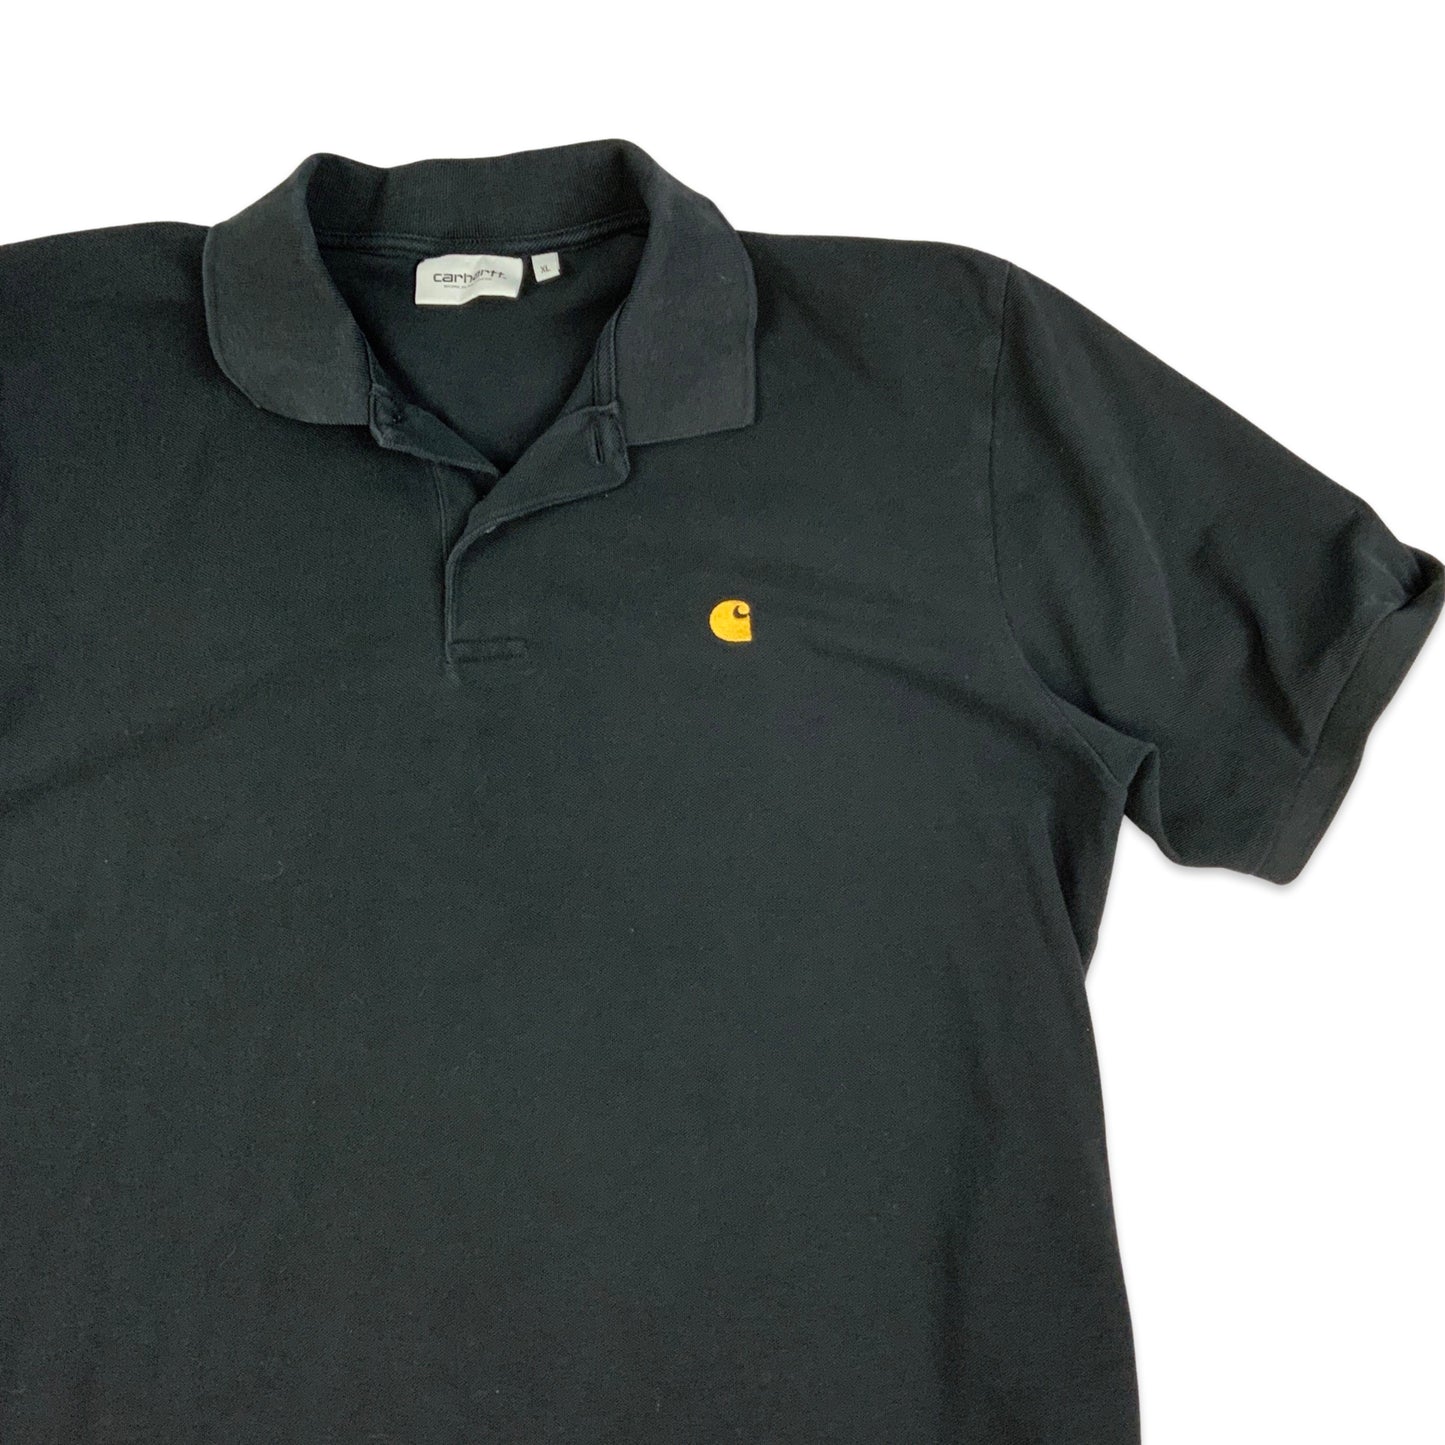 Carhartt WIP Black Polo Shirt L XL